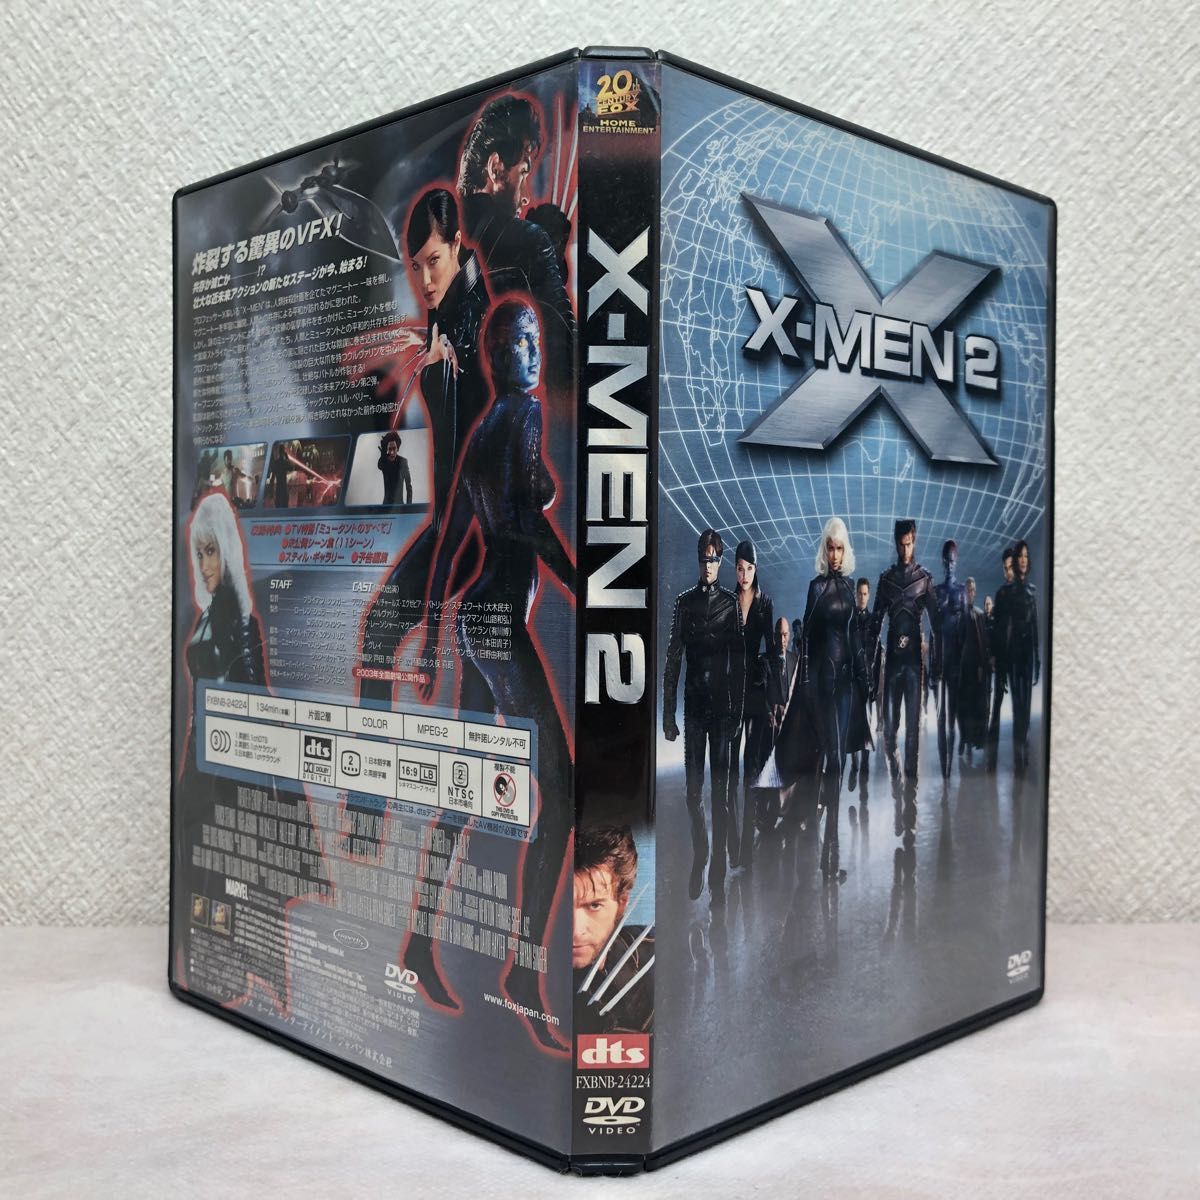 『X-MEN 特別編』 『X-MEN2』DVD2作品セット